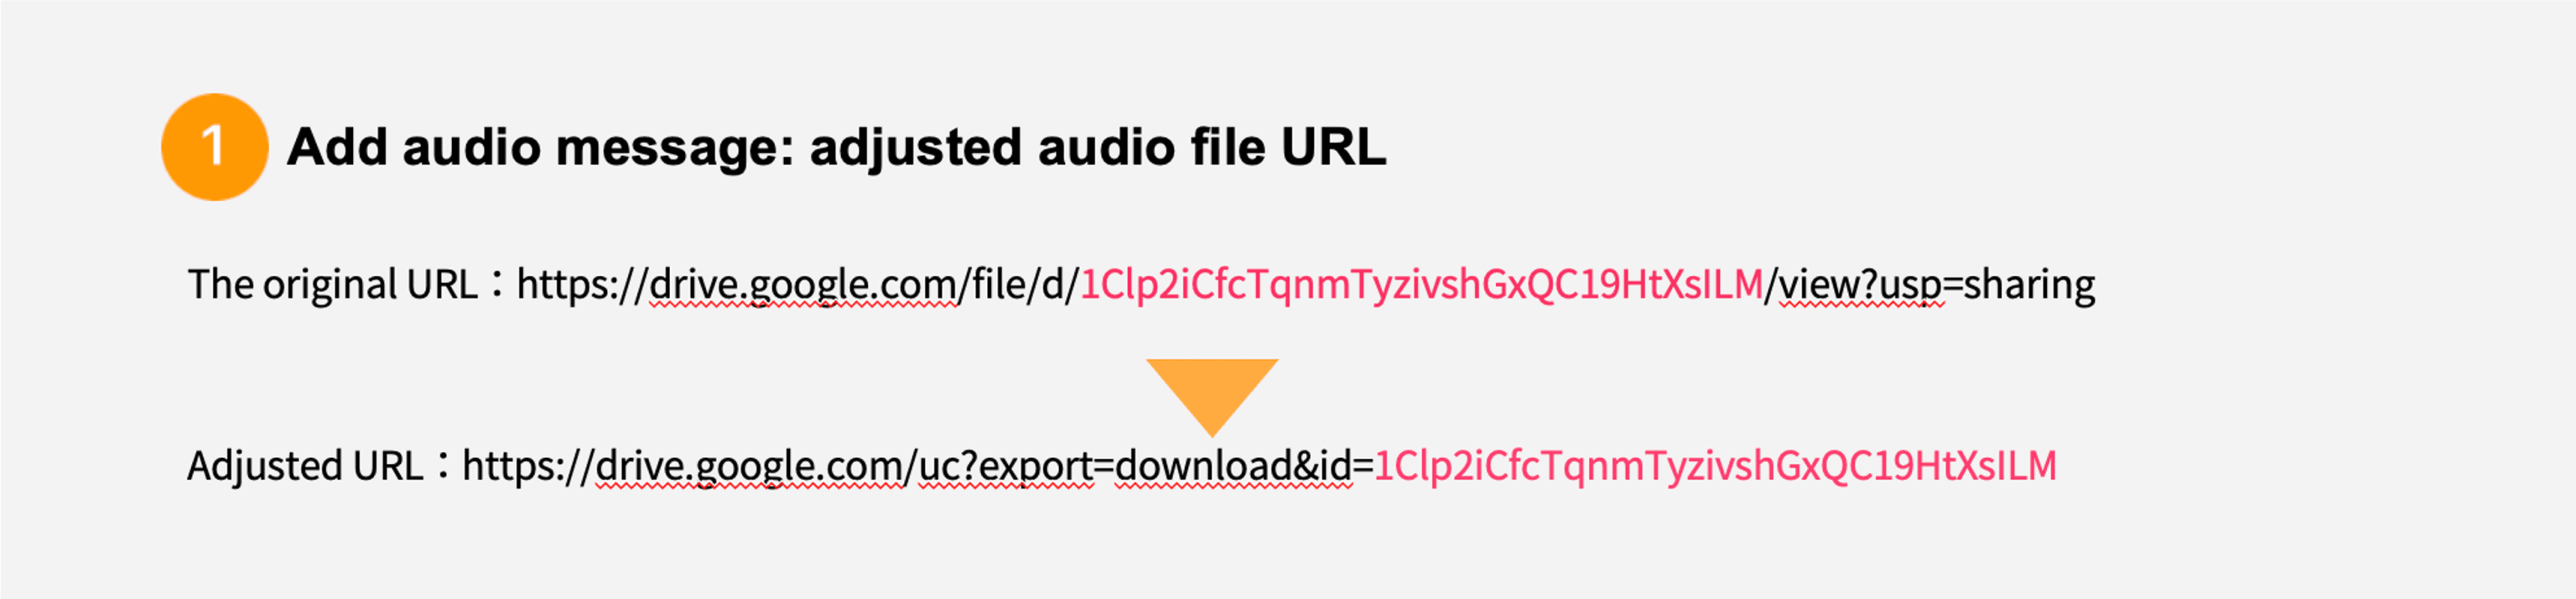  adjusted audio file UR